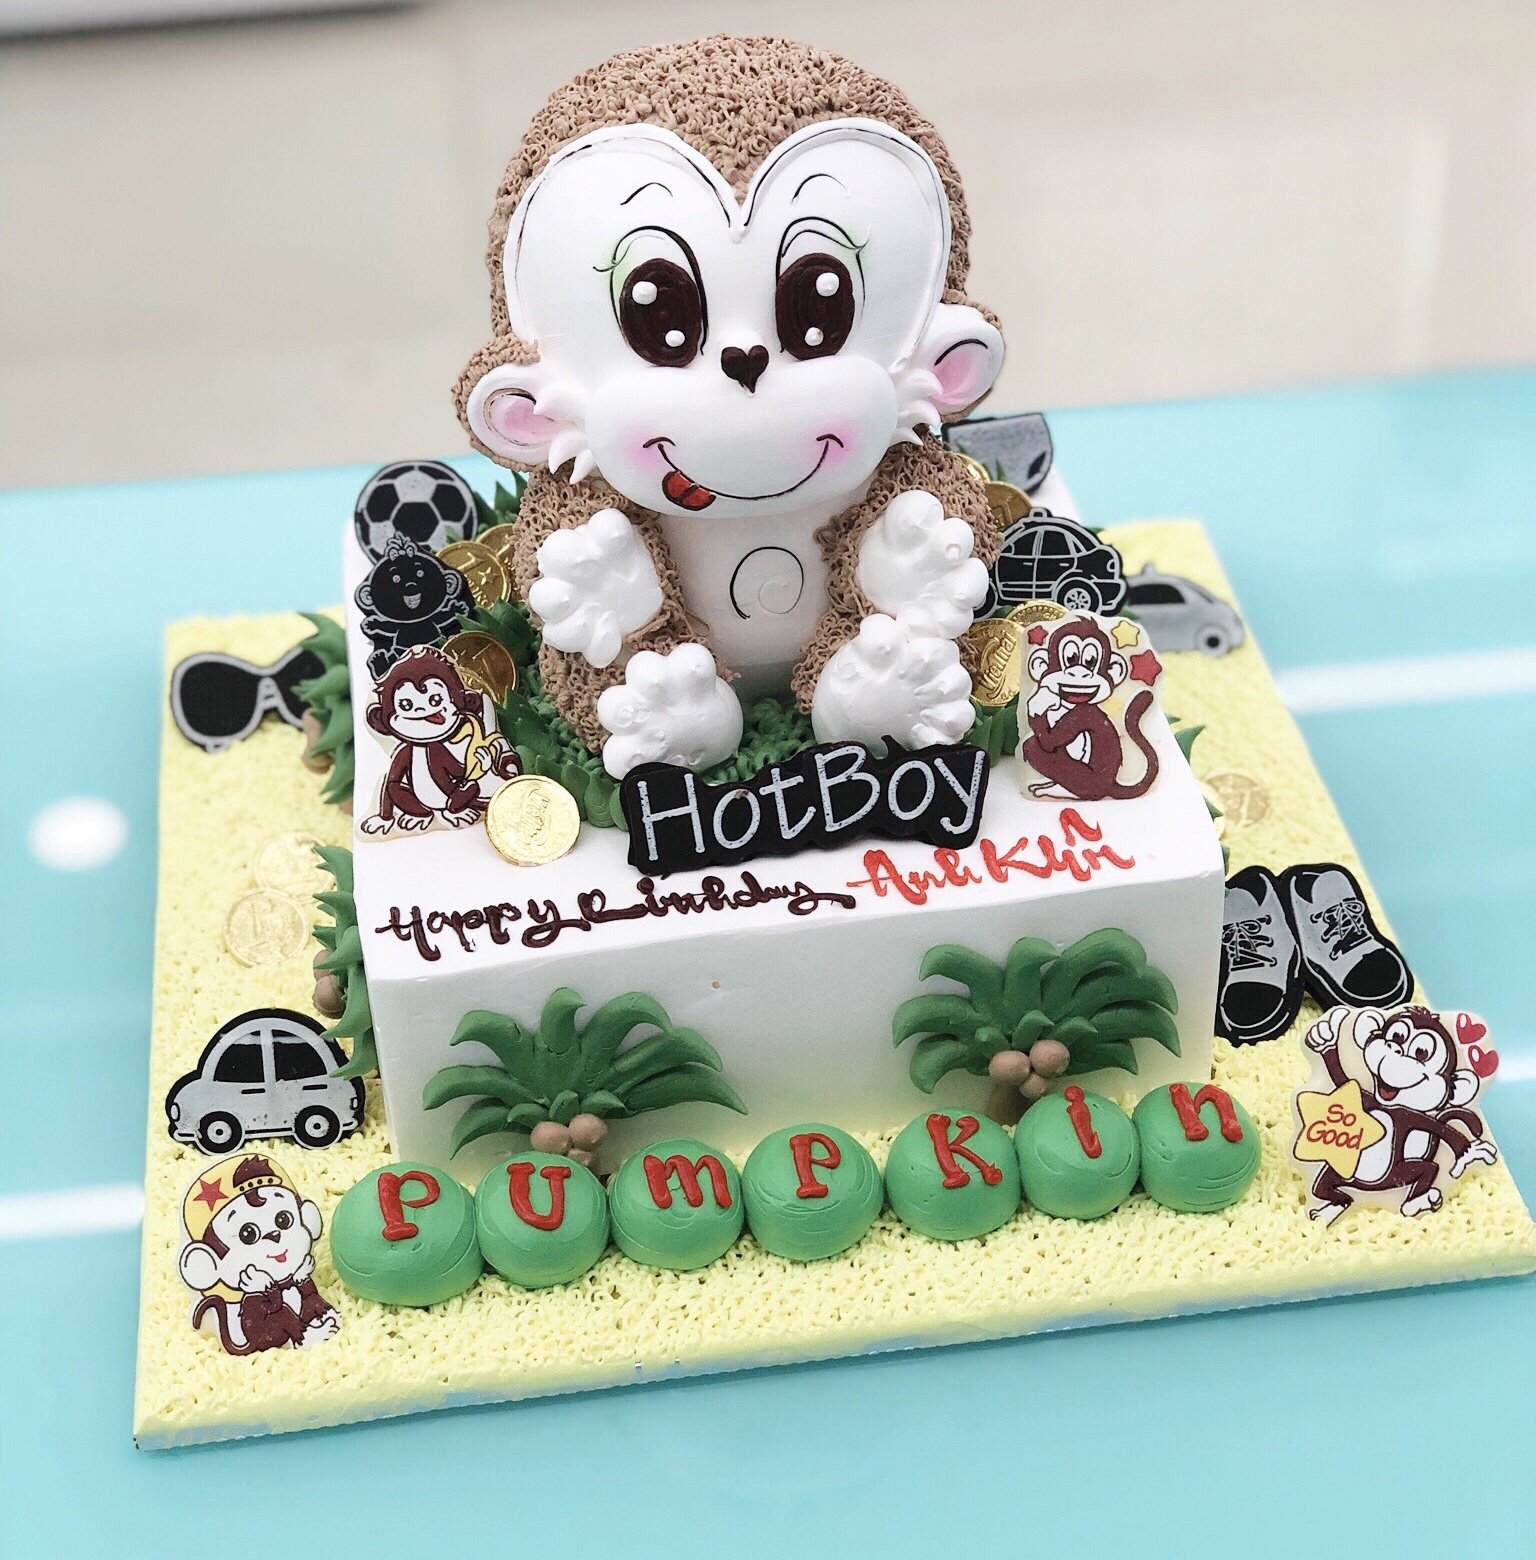 Tuổi thân là một dịp đặc biệt trong đời người, vậy tại sao bạn không tặng cho người thân một chiếc bánh sinh nhật tạo hình con khỉ tuổi thân? Hình ảnh con khỉ trông đáng yêu và mang đến một cảm giác vui vẻ và ngọt ngào cho mọi người trong buổi tiệc.